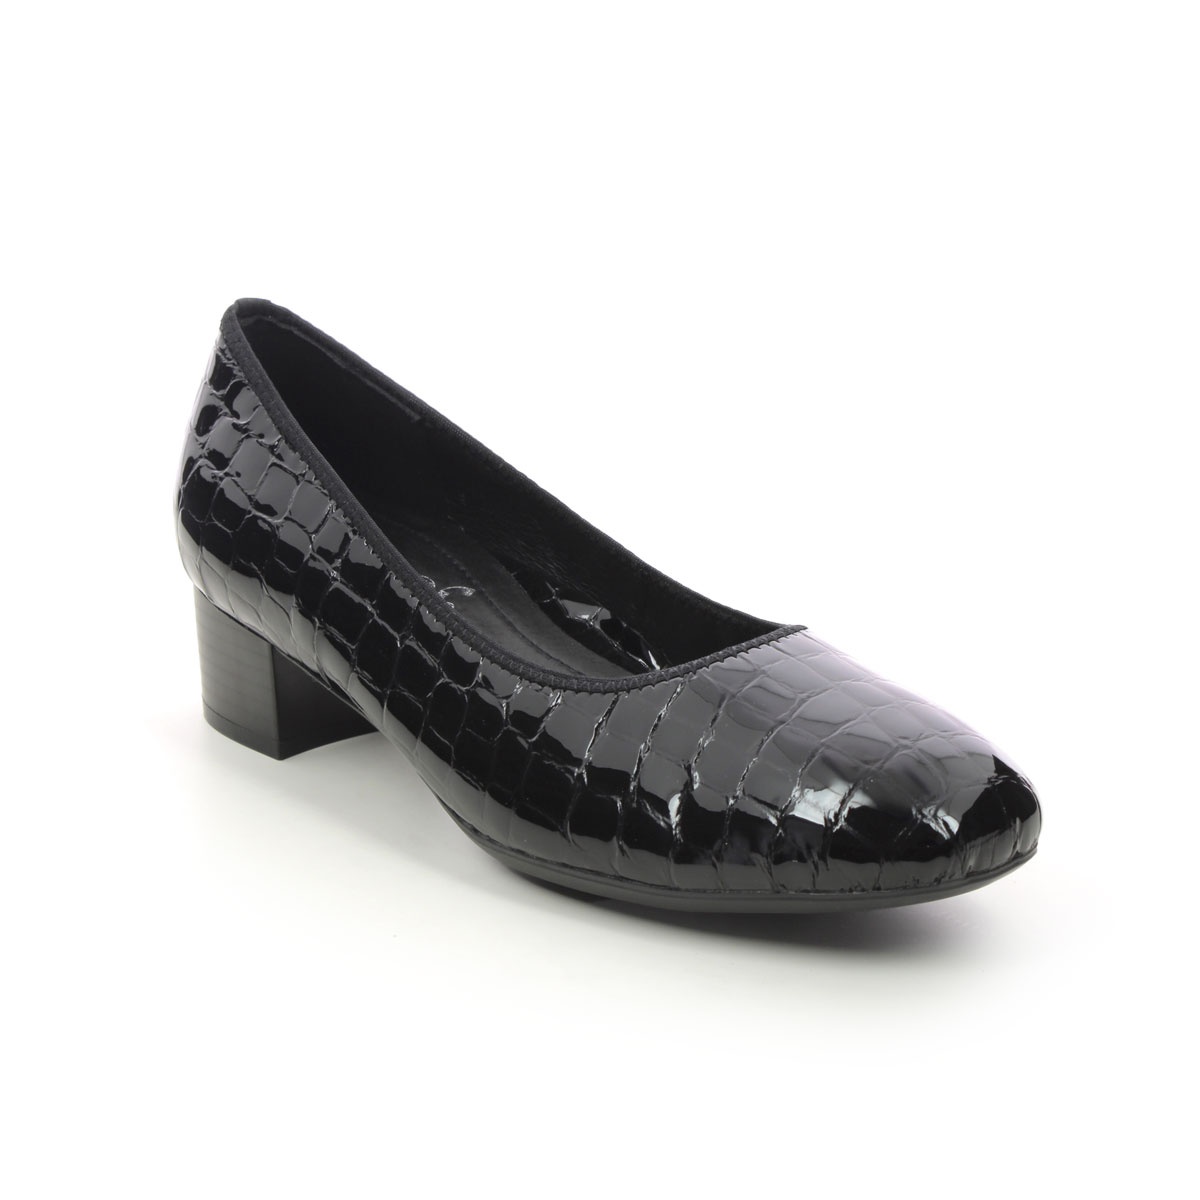 Rieker Develop Graco Black Croc Womens Court Shoes 49260-02 In Size 38 In Plain Black Croc Effect